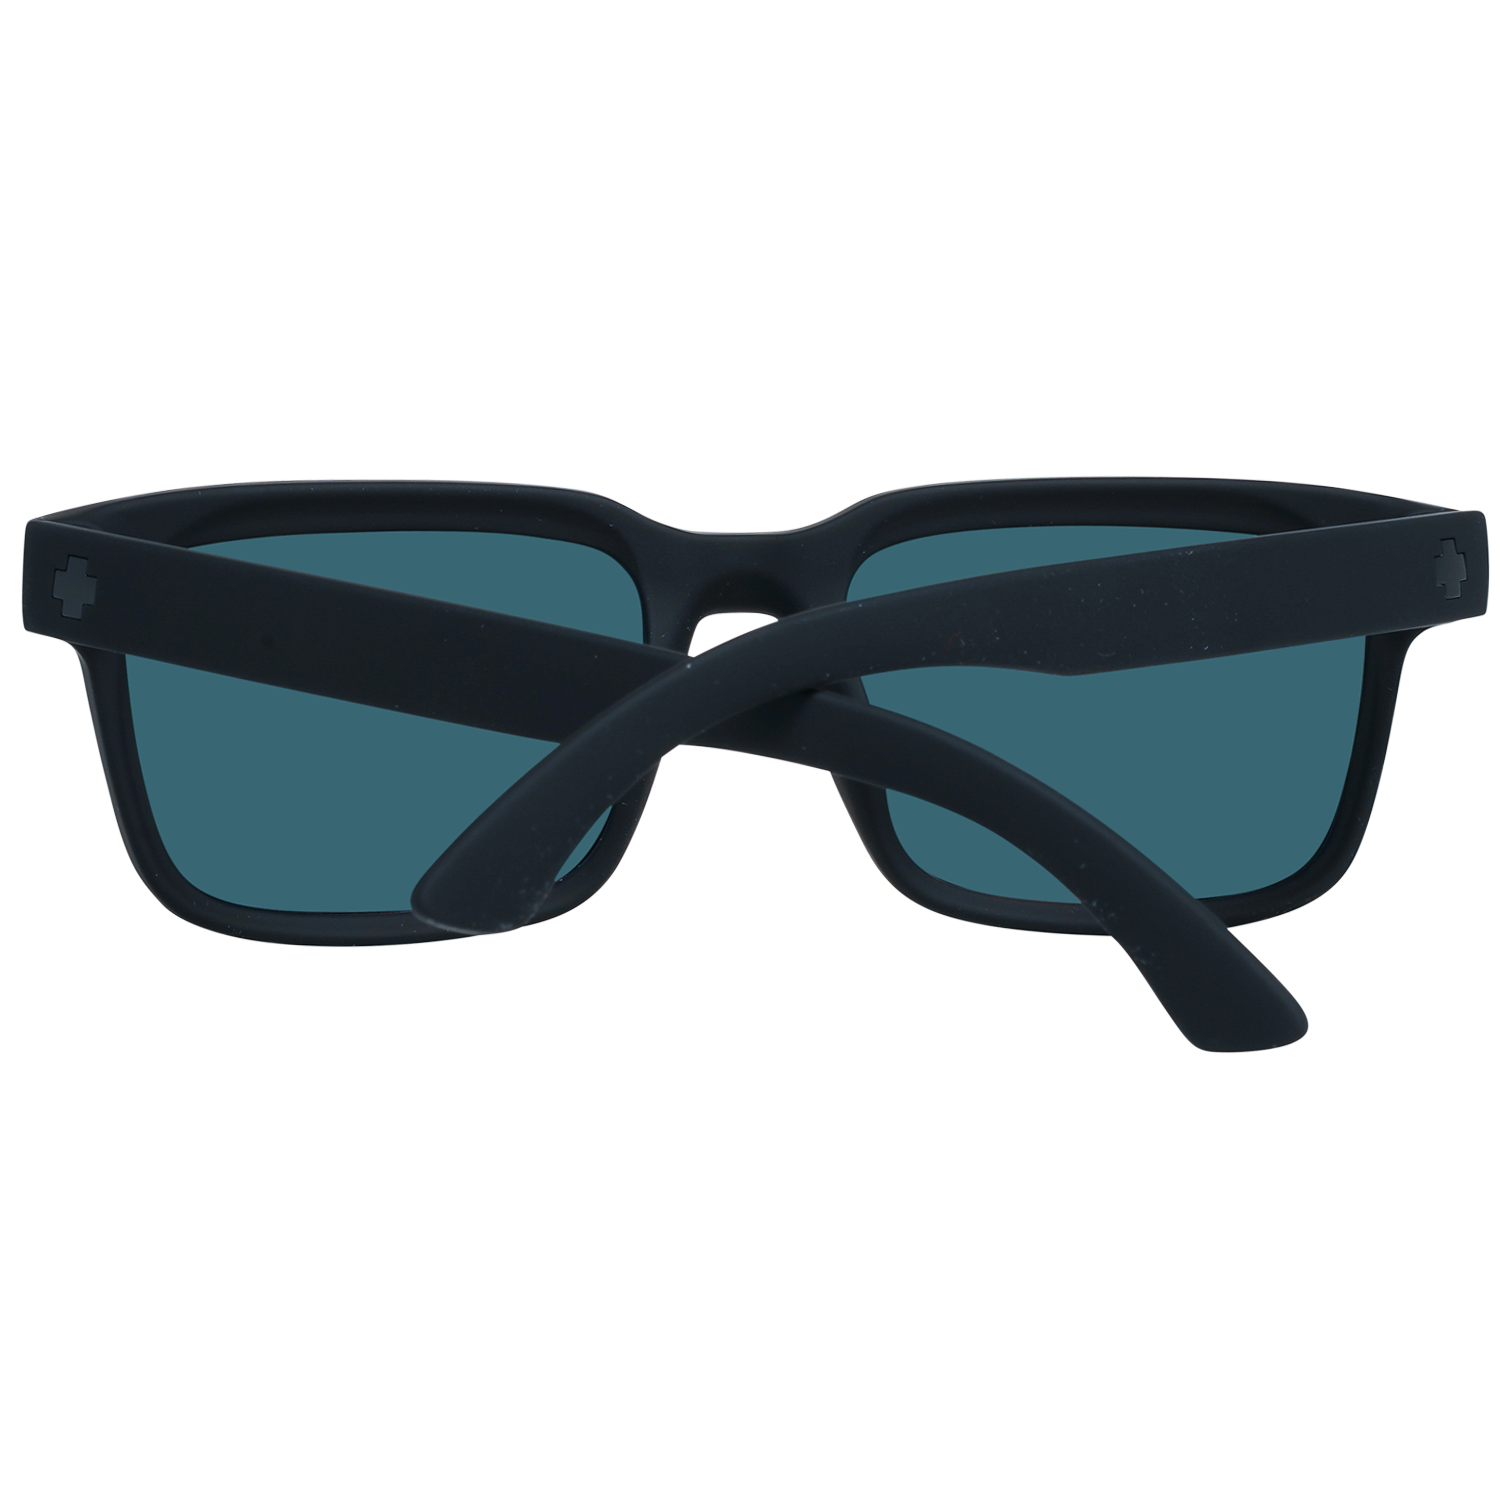 Spy Sunglasses Spy Sunglasses 673520973365 Helm 2 57 Eyeglasses Eyewear UK USA Australia 